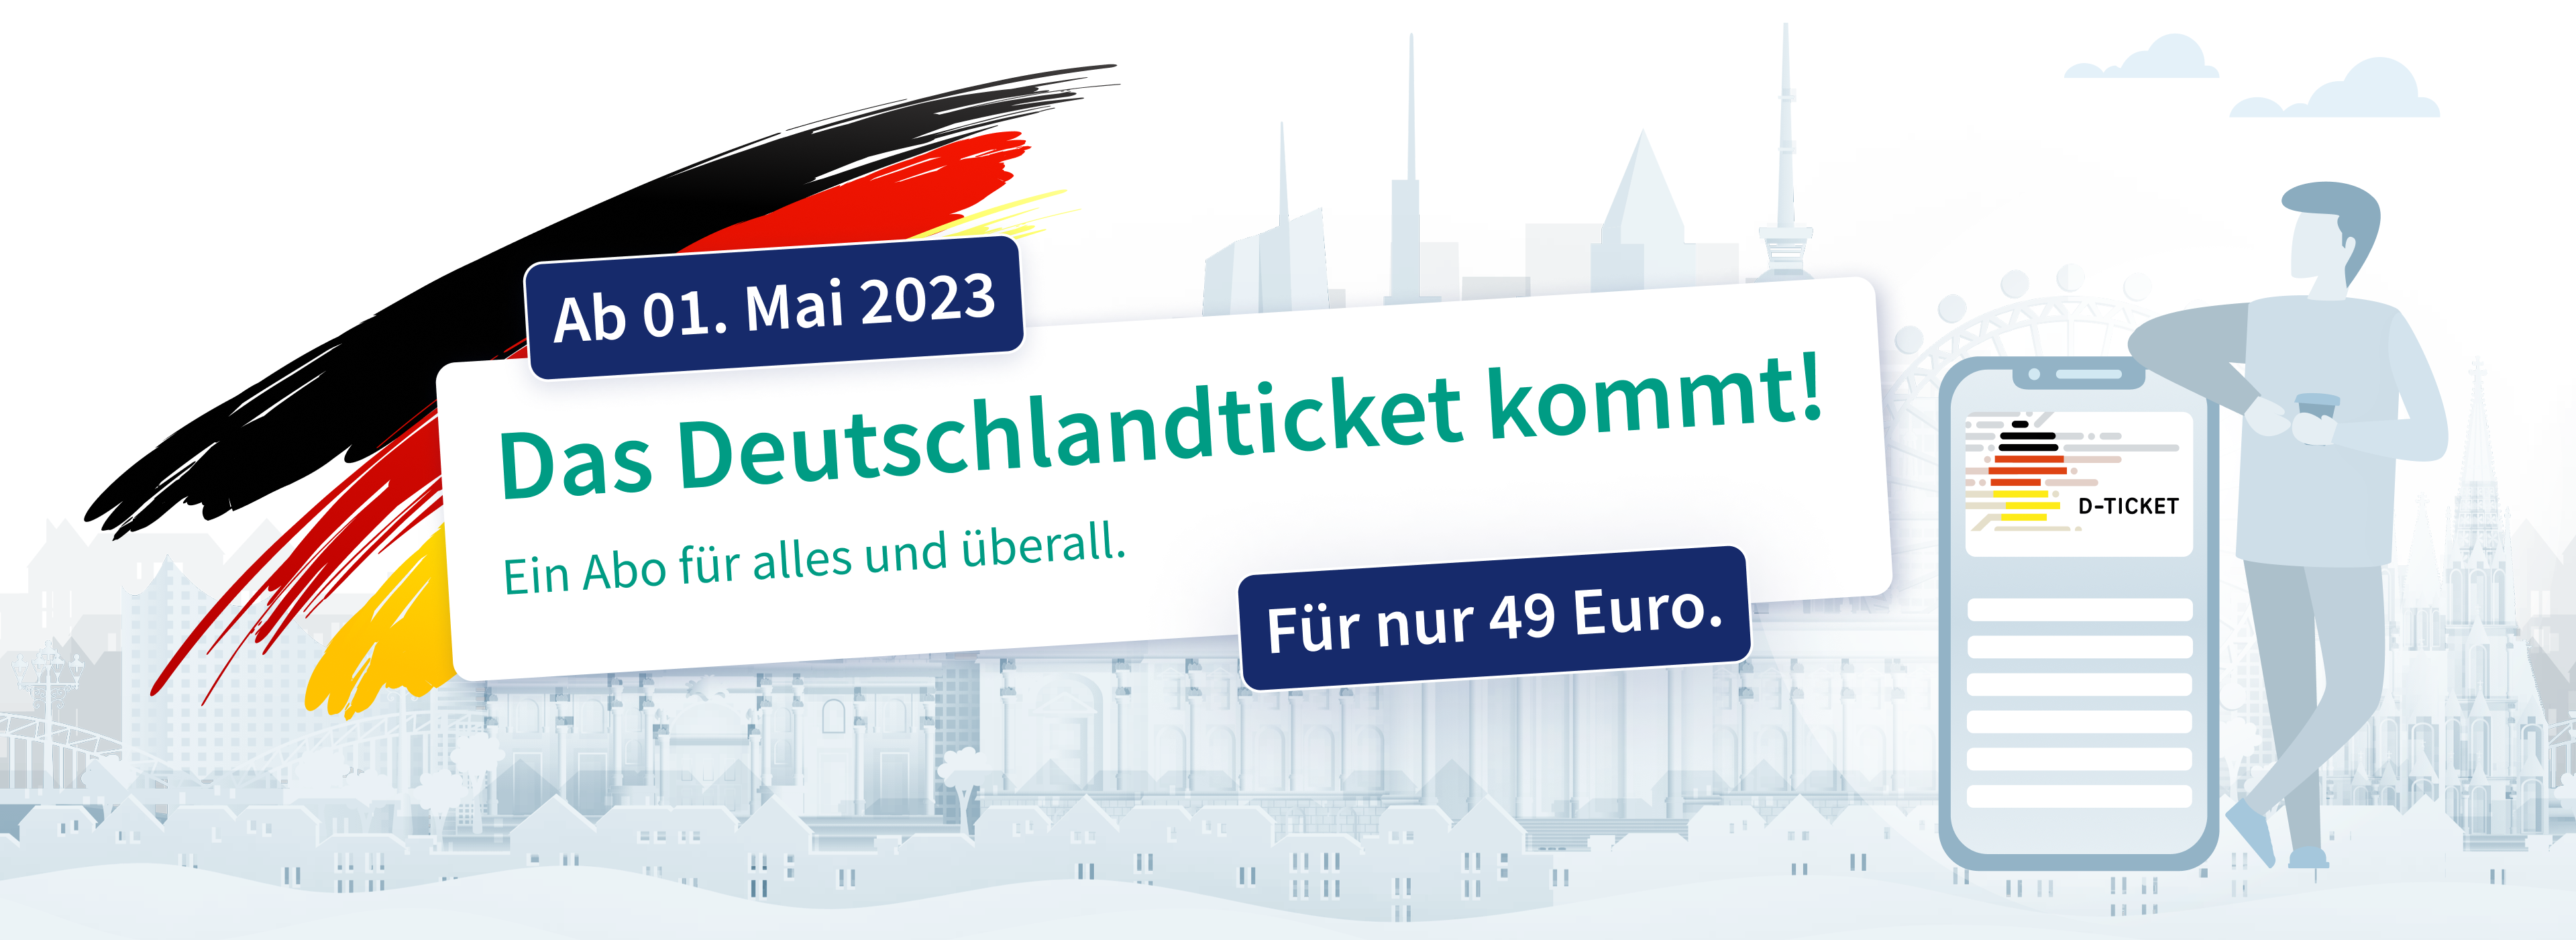 Eine Illustration, die Deutschland und einen Fahrgast mit der RMVgo-App samt Deutschlandticket zeigt.